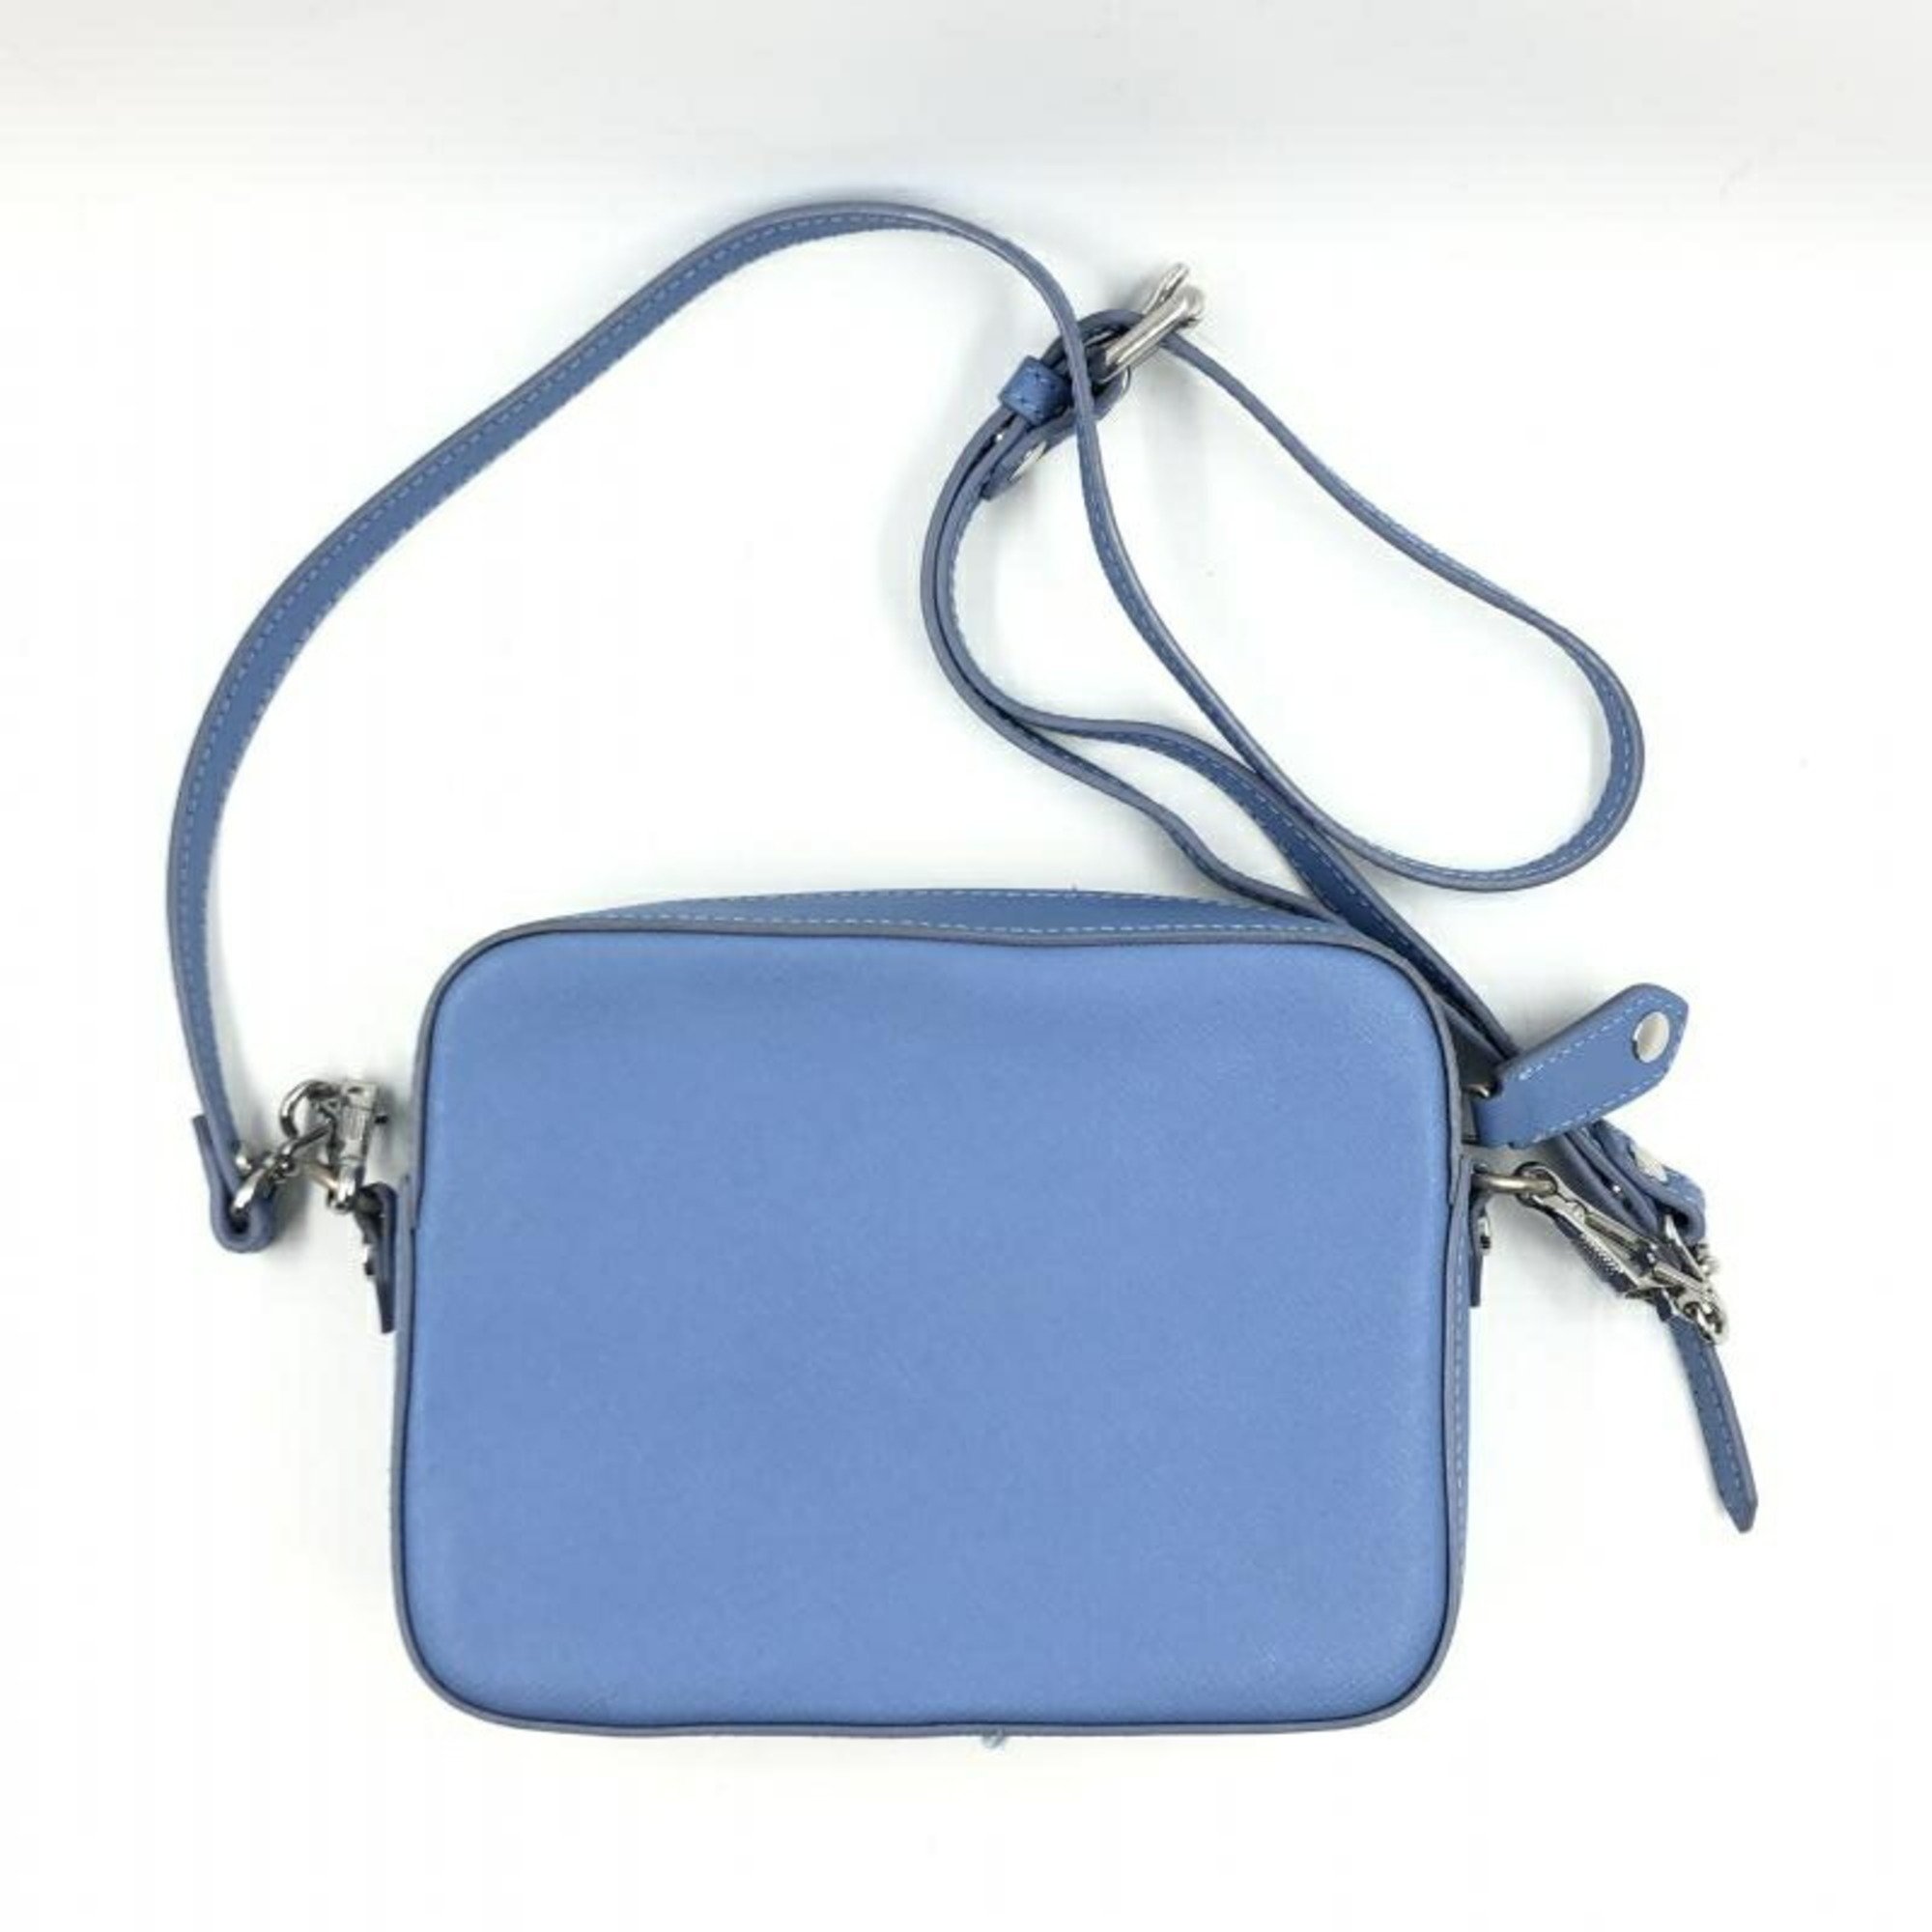 Vivienne Westwood Camera Bag Blue